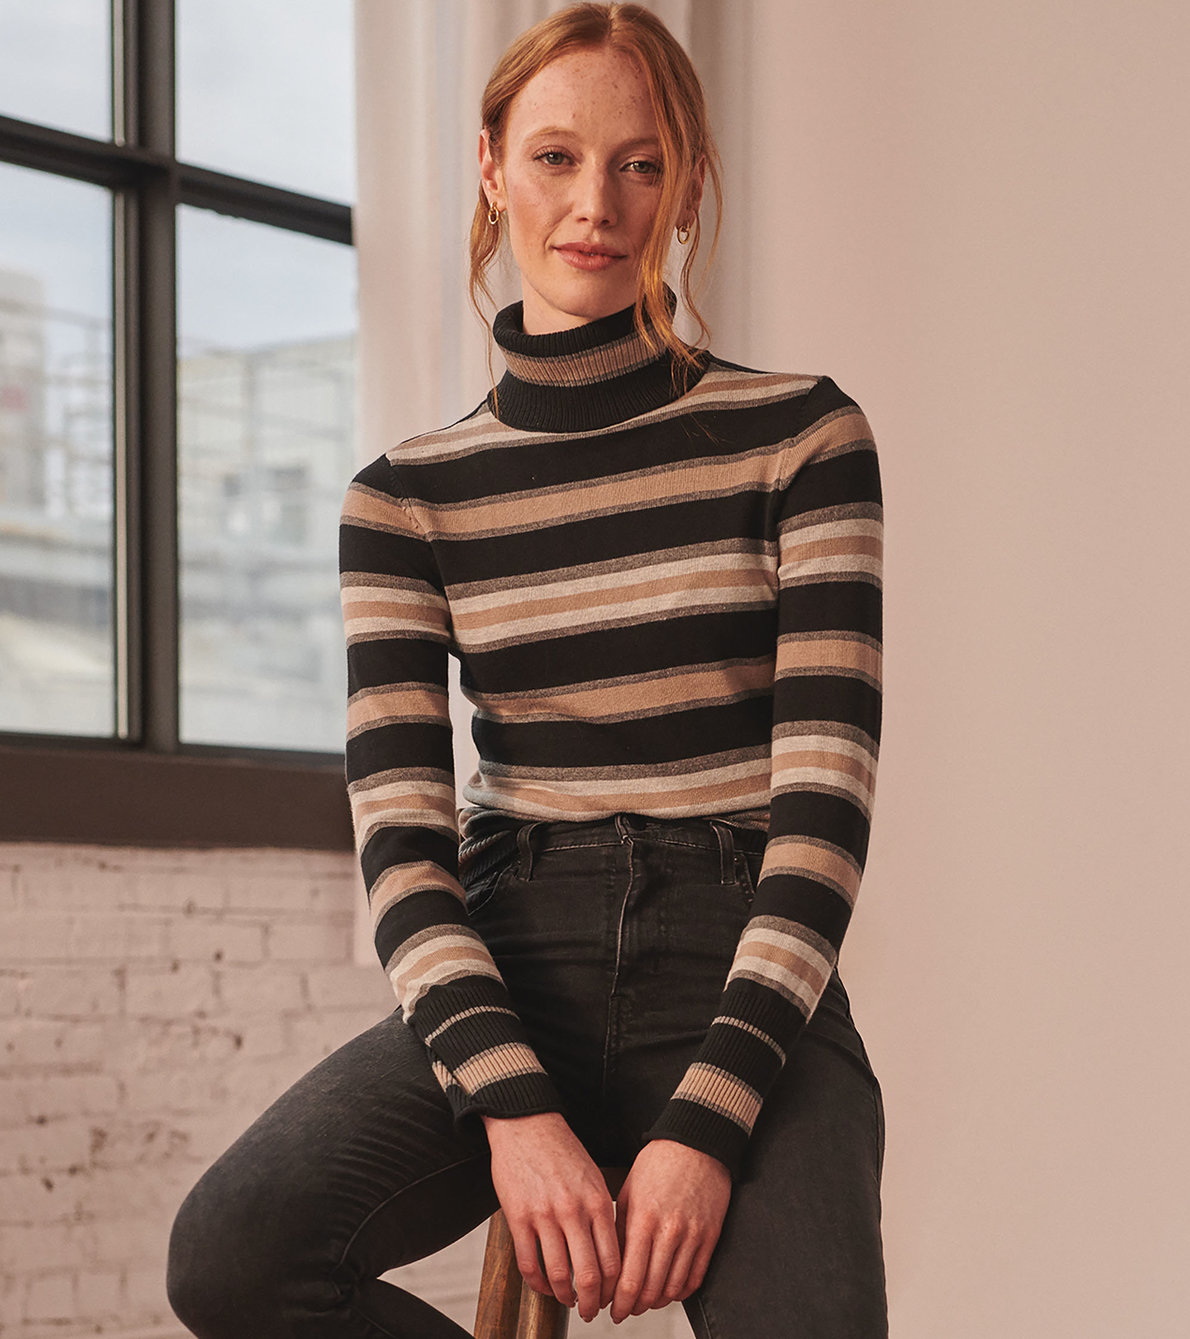 View larger image of Turtleneck Sweater - Melange Stripes